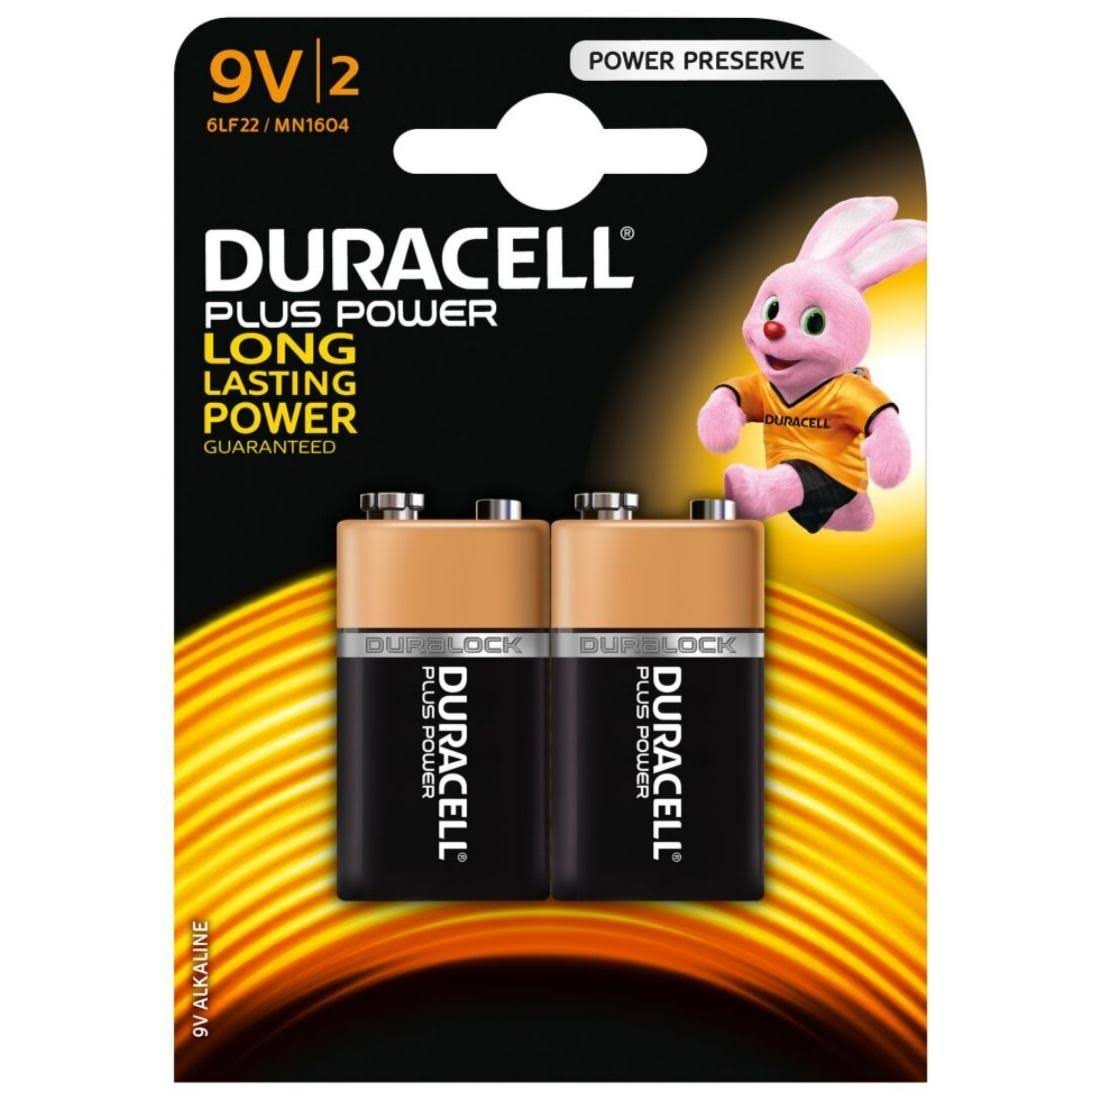 Duracell Plus Power Alkaline Batteries - 9V, 2pk